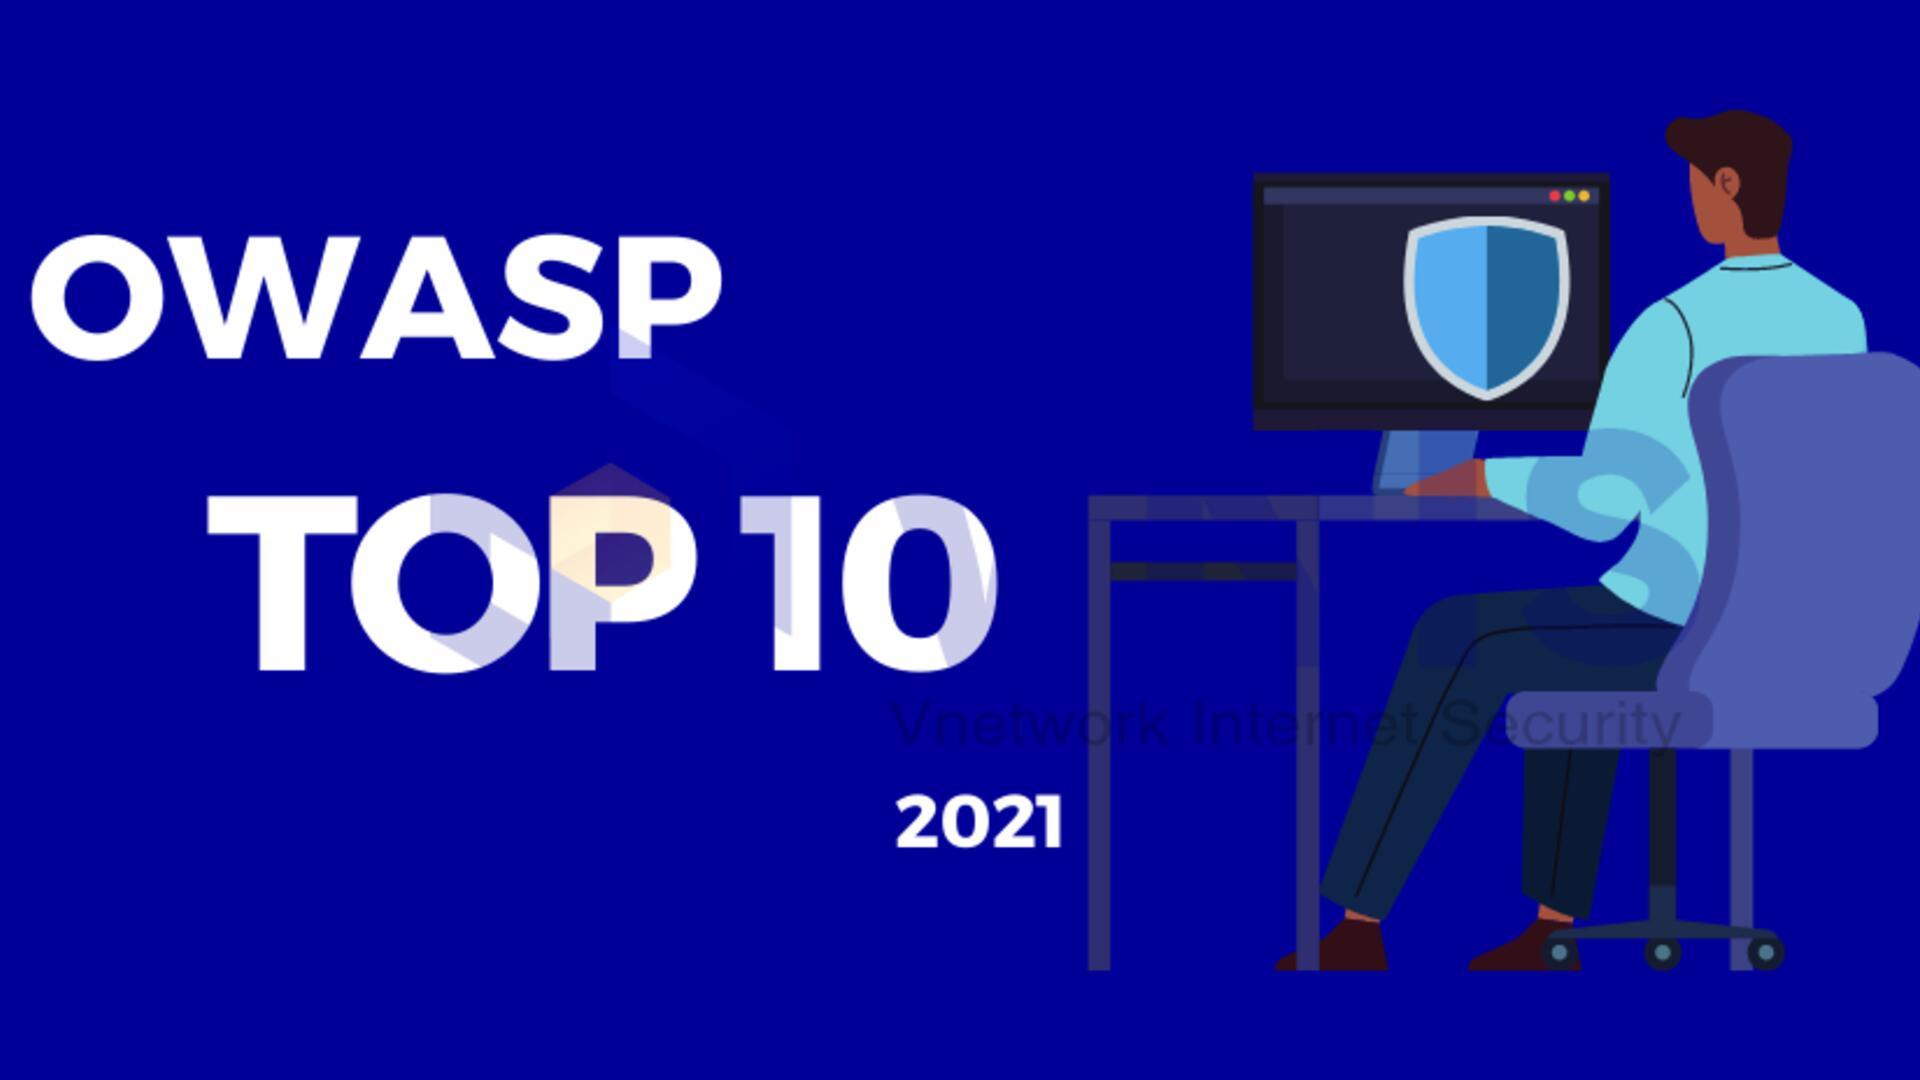 Báo cáo về OWASP Top 10 và cách loại bỏ lỗ hổng bảo mật